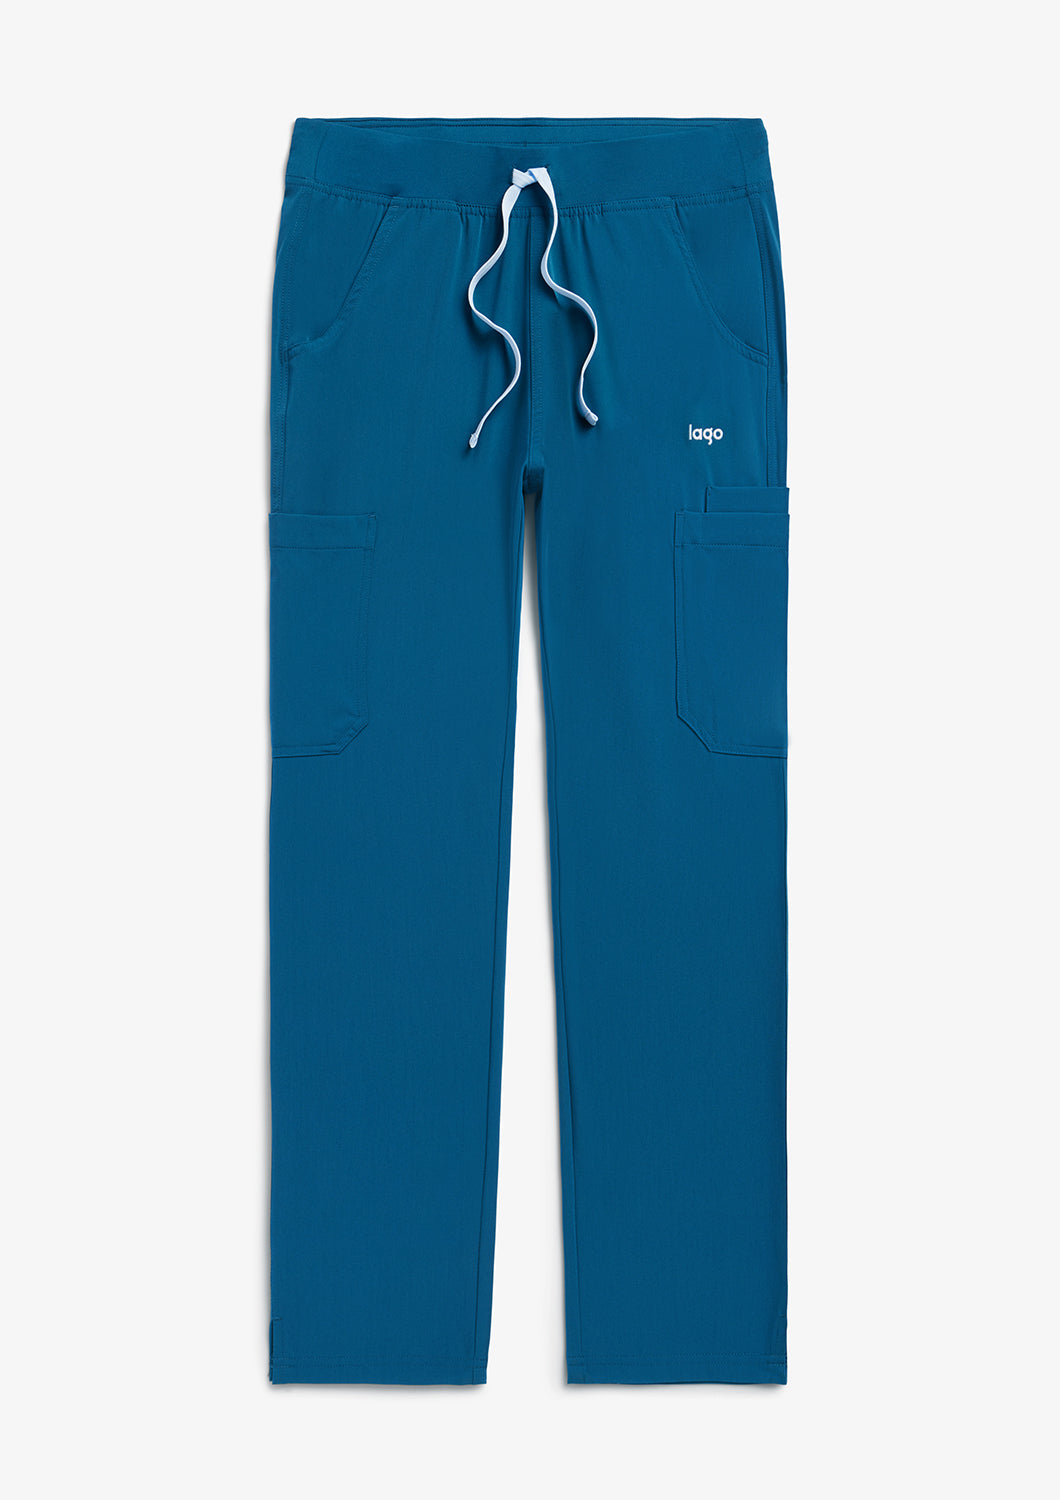 Union Pants - Caribbean Blue